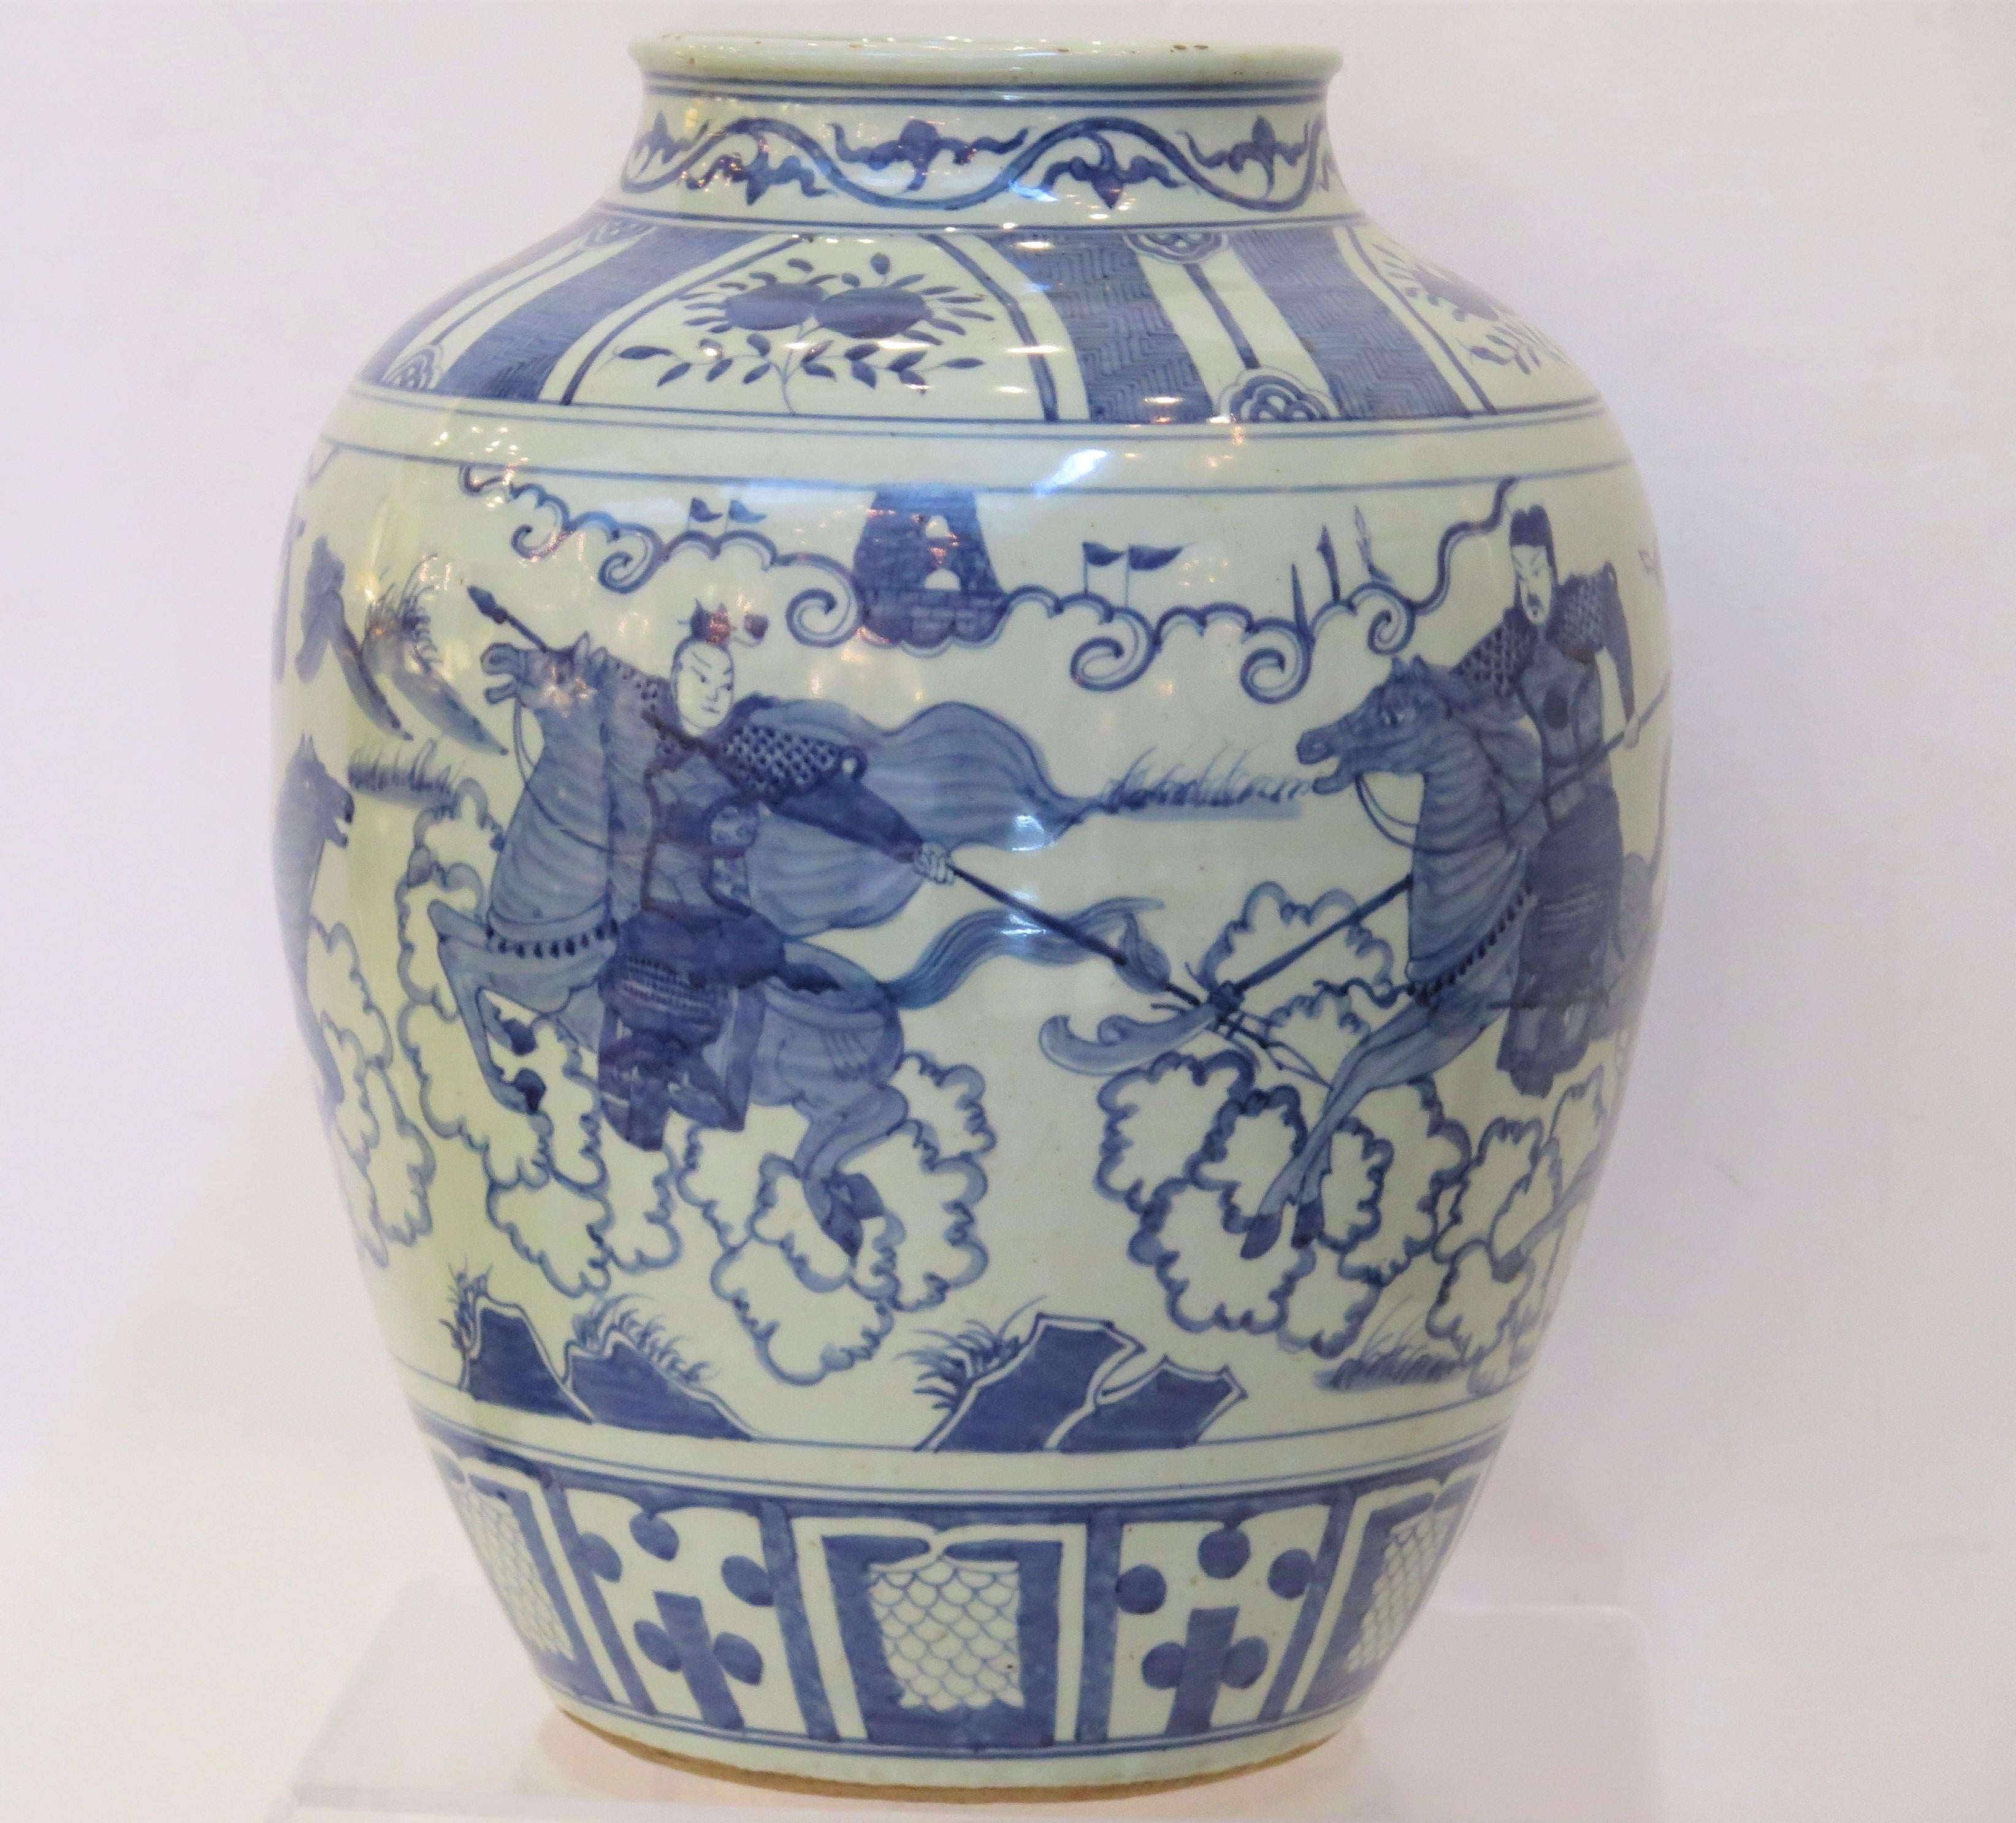 Chinesisches blau-weißes Geschirr aus dem 19. Jahrhundert, verziert mit reitenden Männern/Kriegern.    ( Chinesischer Porzellankrug ) 

16,5